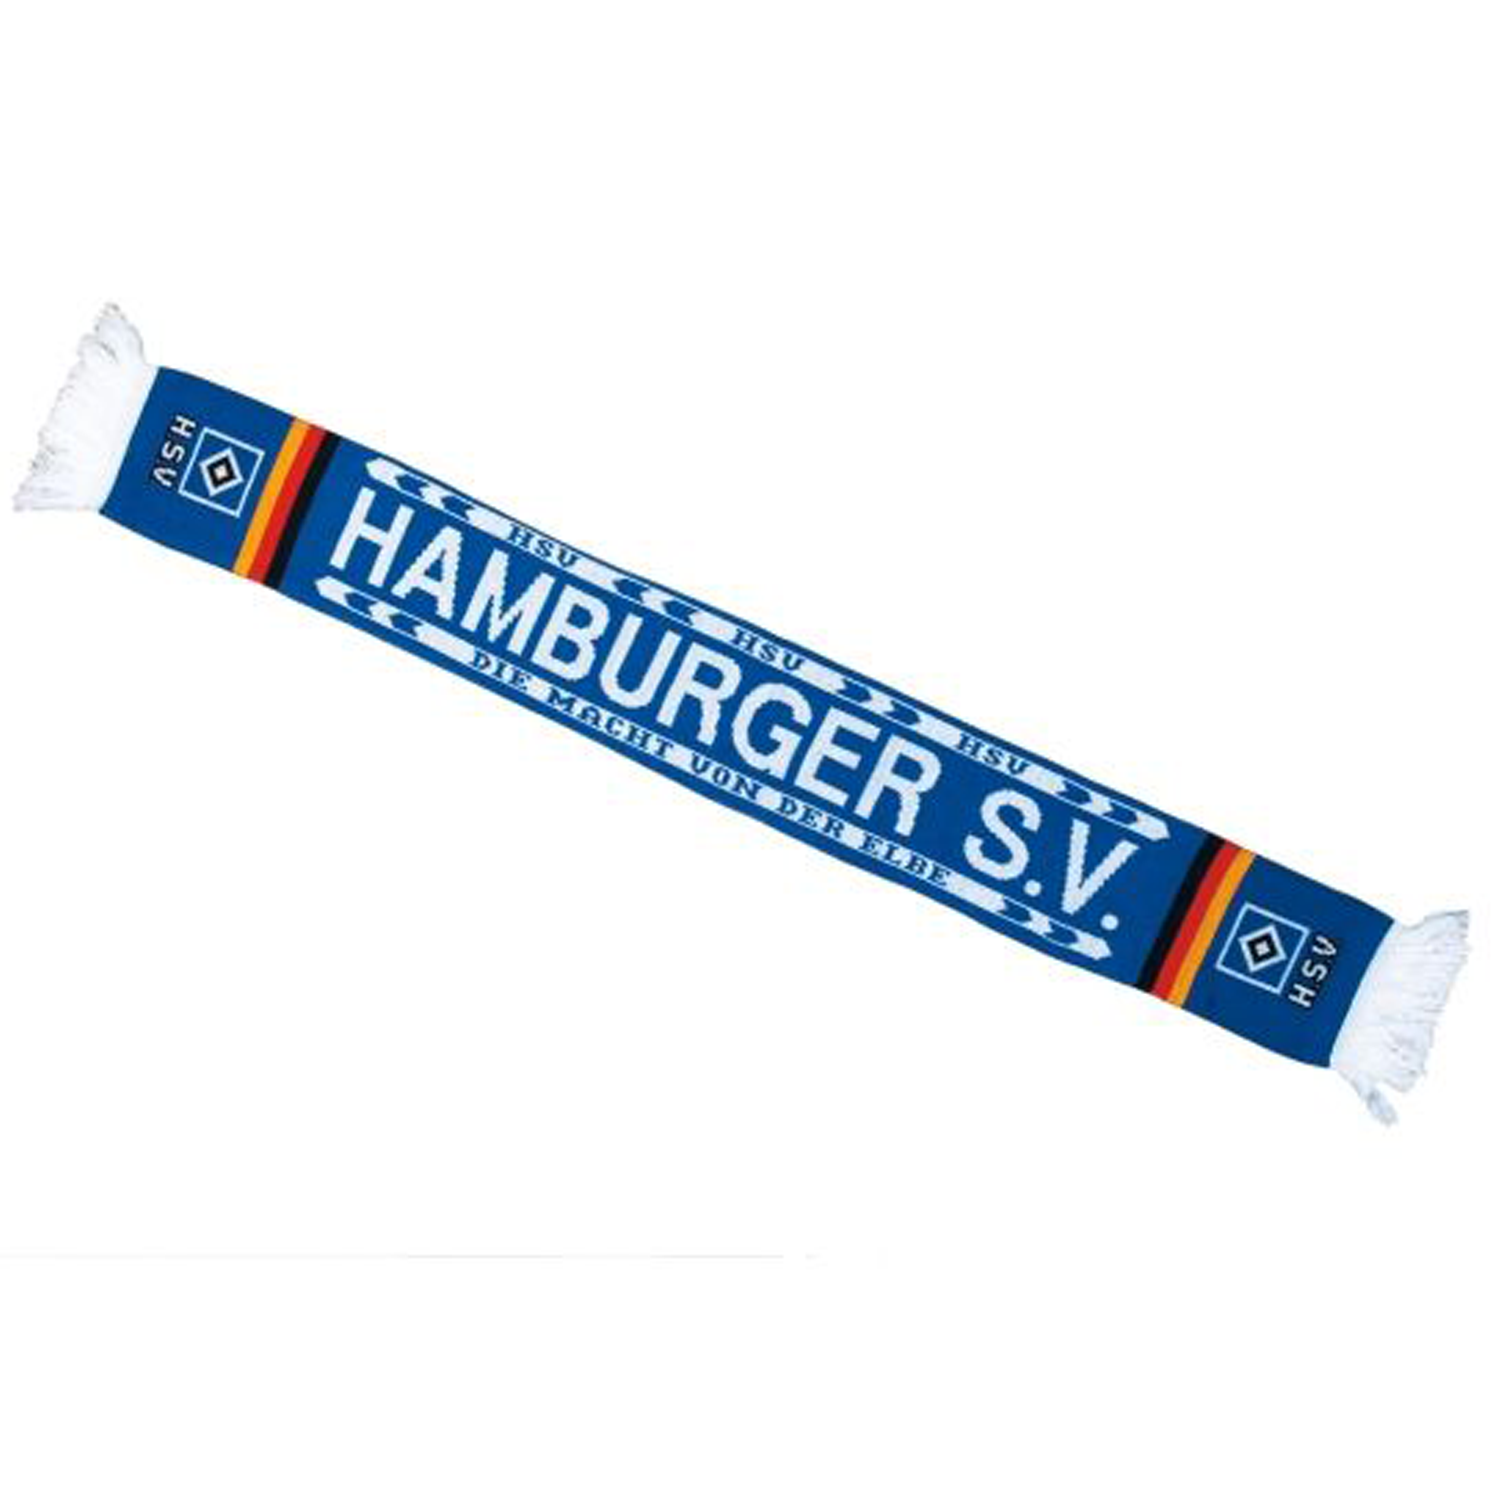 Hamburger SV Scarf "Macht von der Elbe" - blue